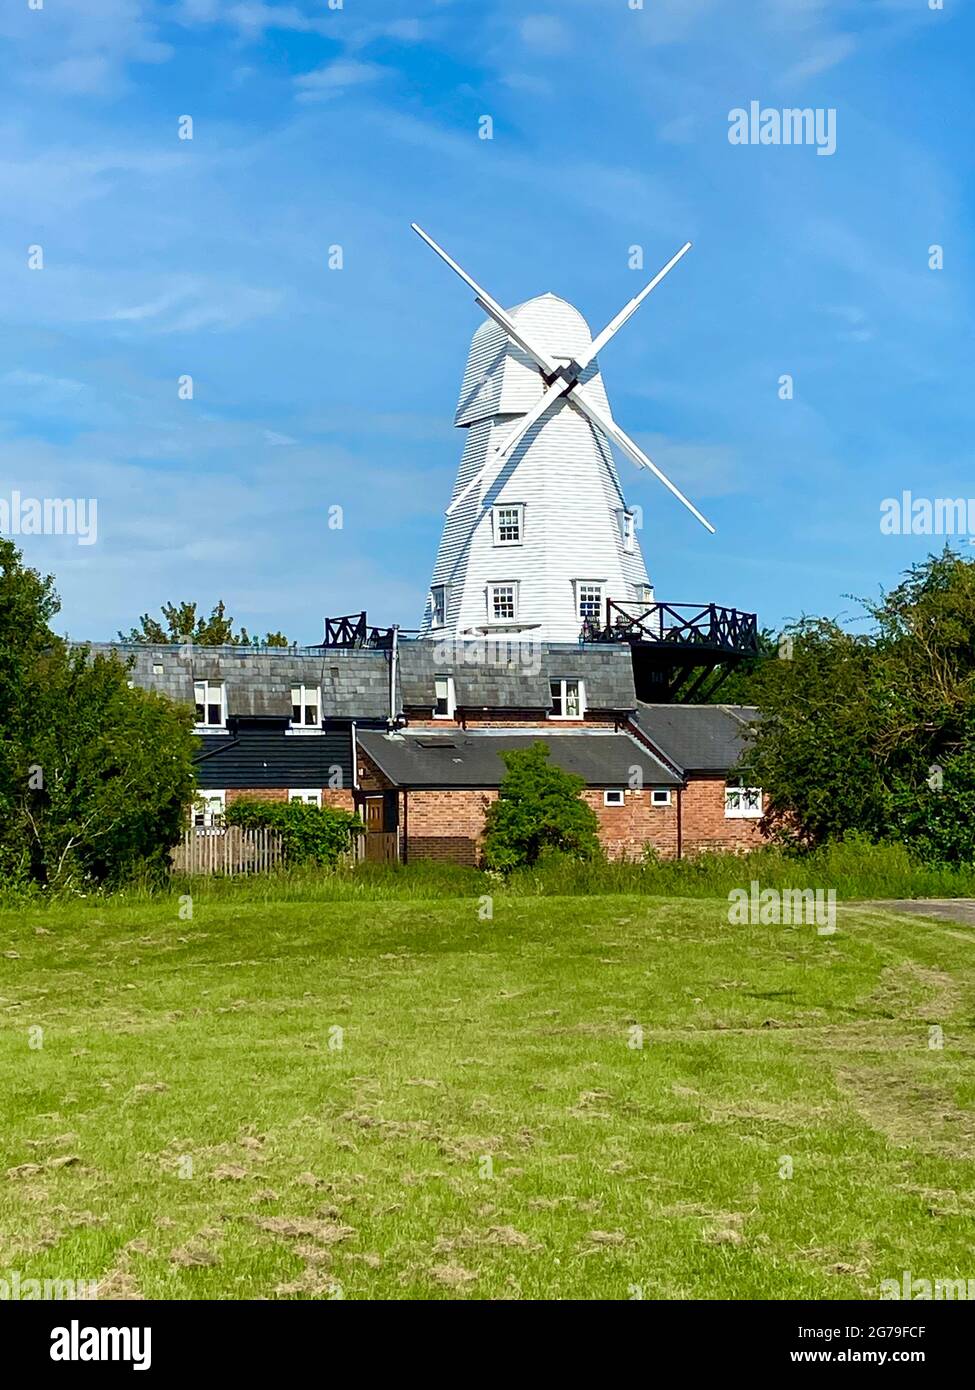 RYE, EAST SUSSEX, Reino Unido - 10.20.2020: Molino de viento de choque en las orillas del río Tillingham en Rye en East Sussex, este molino de viento en funcionamiento es el hotel Foto de stock